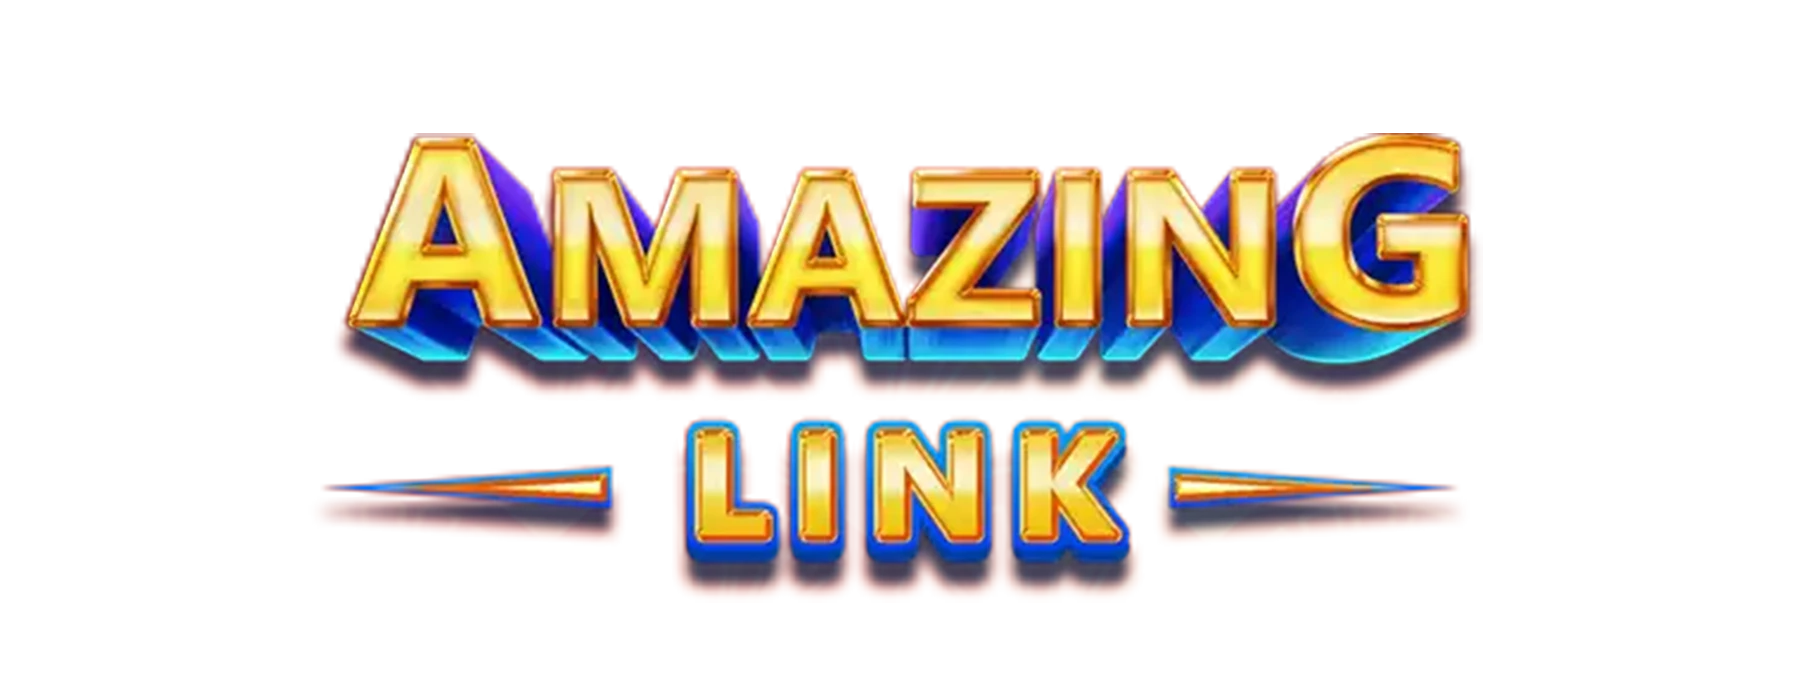 Disfruta de nuestros juegos de la saga Amazing Link